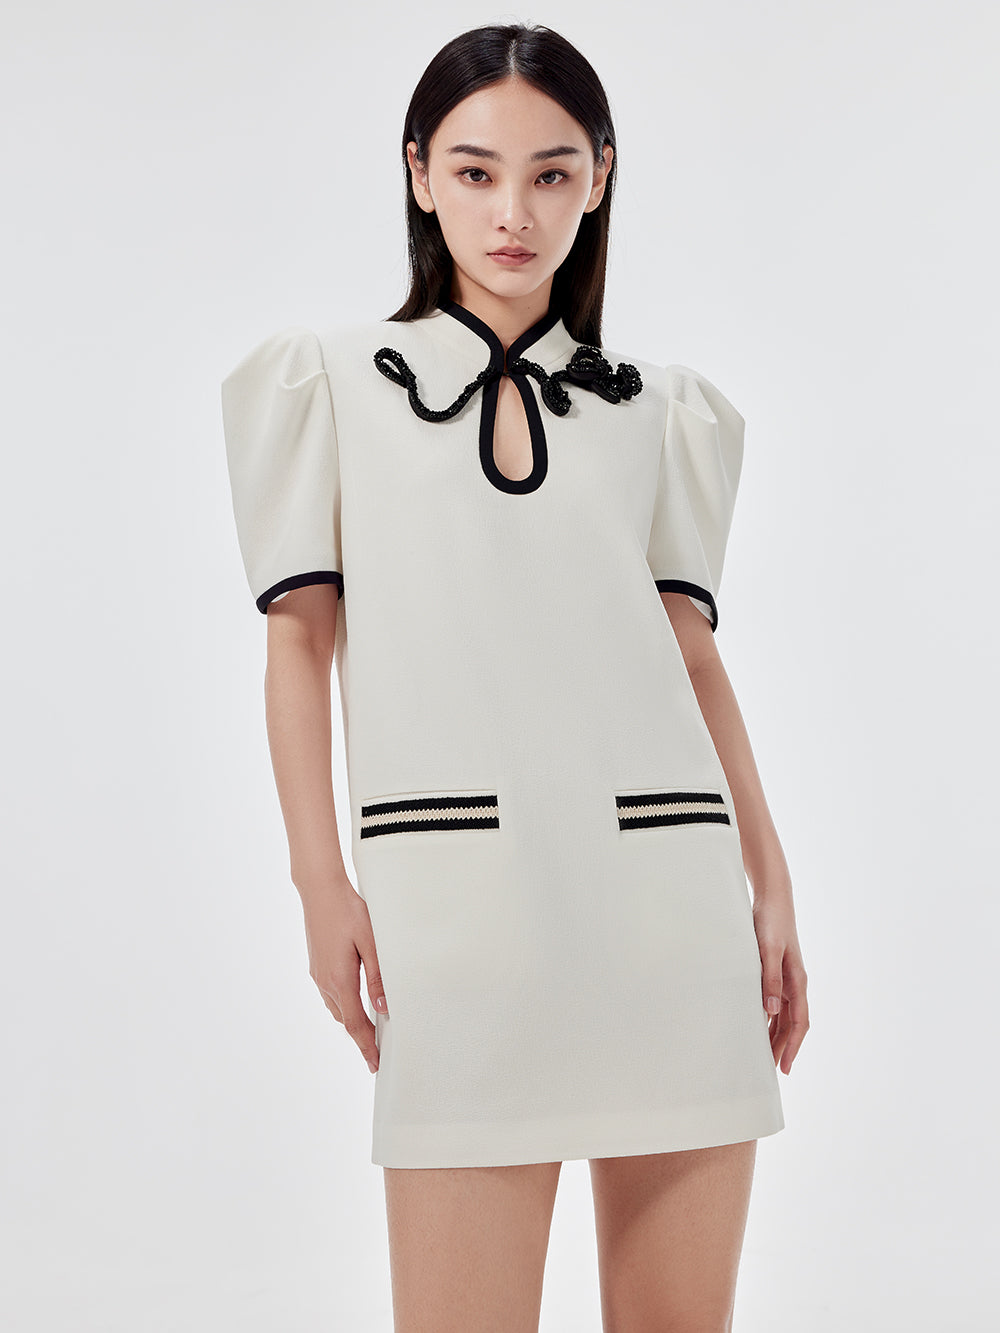 MUKZIN Slim Classic Solid Color Lady Dress